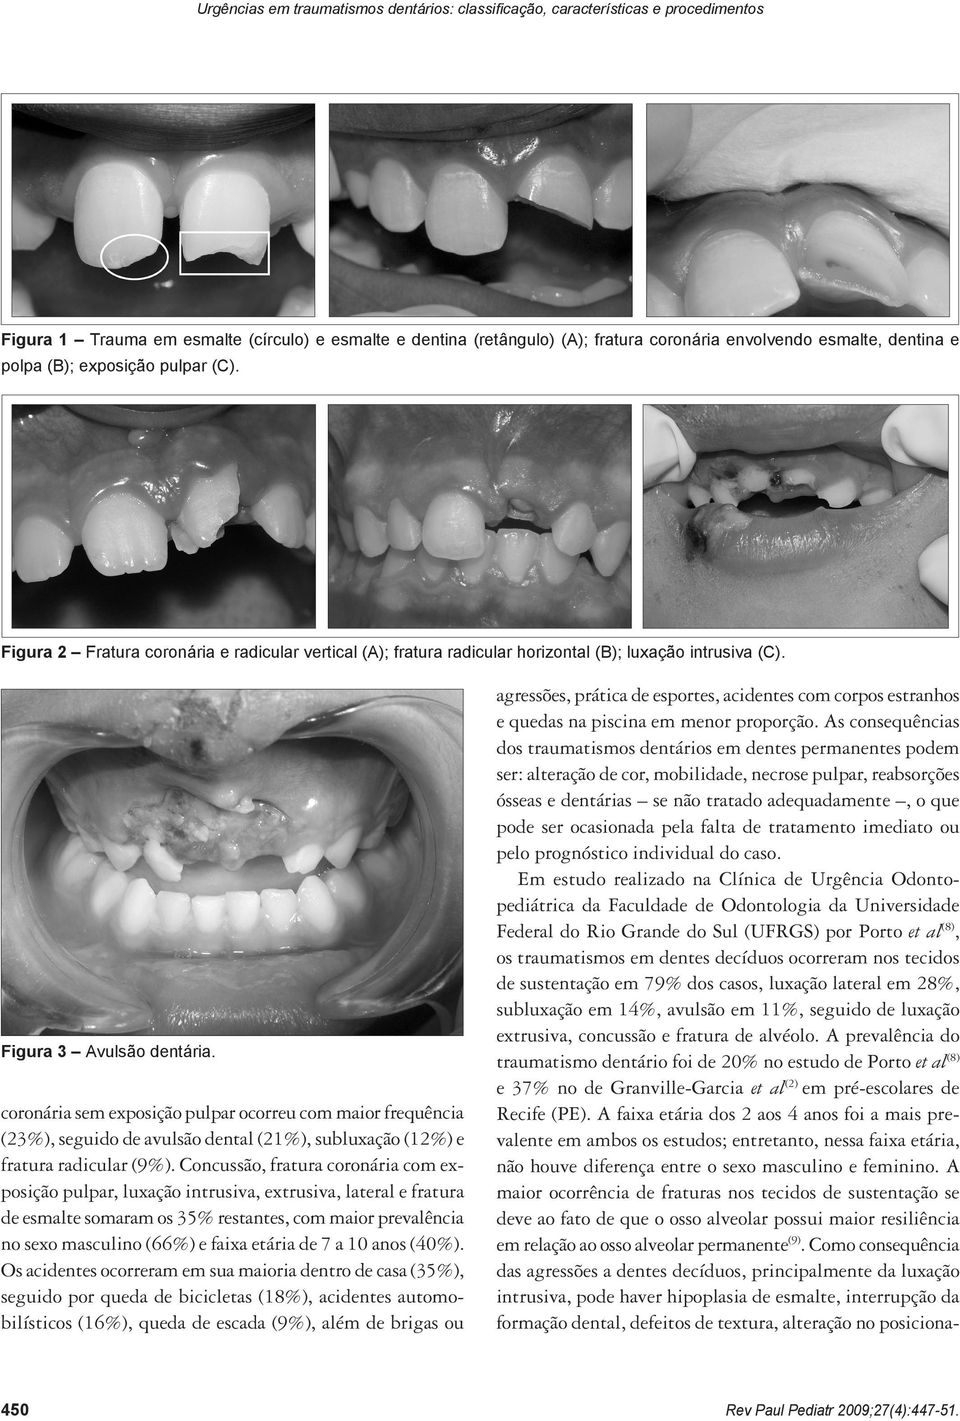 coronária sem exposição pulpar ocorreu com maior frequência (23%), seguido de avulsão dental (21%), subluxação (12%) e fratura radicular (9%).